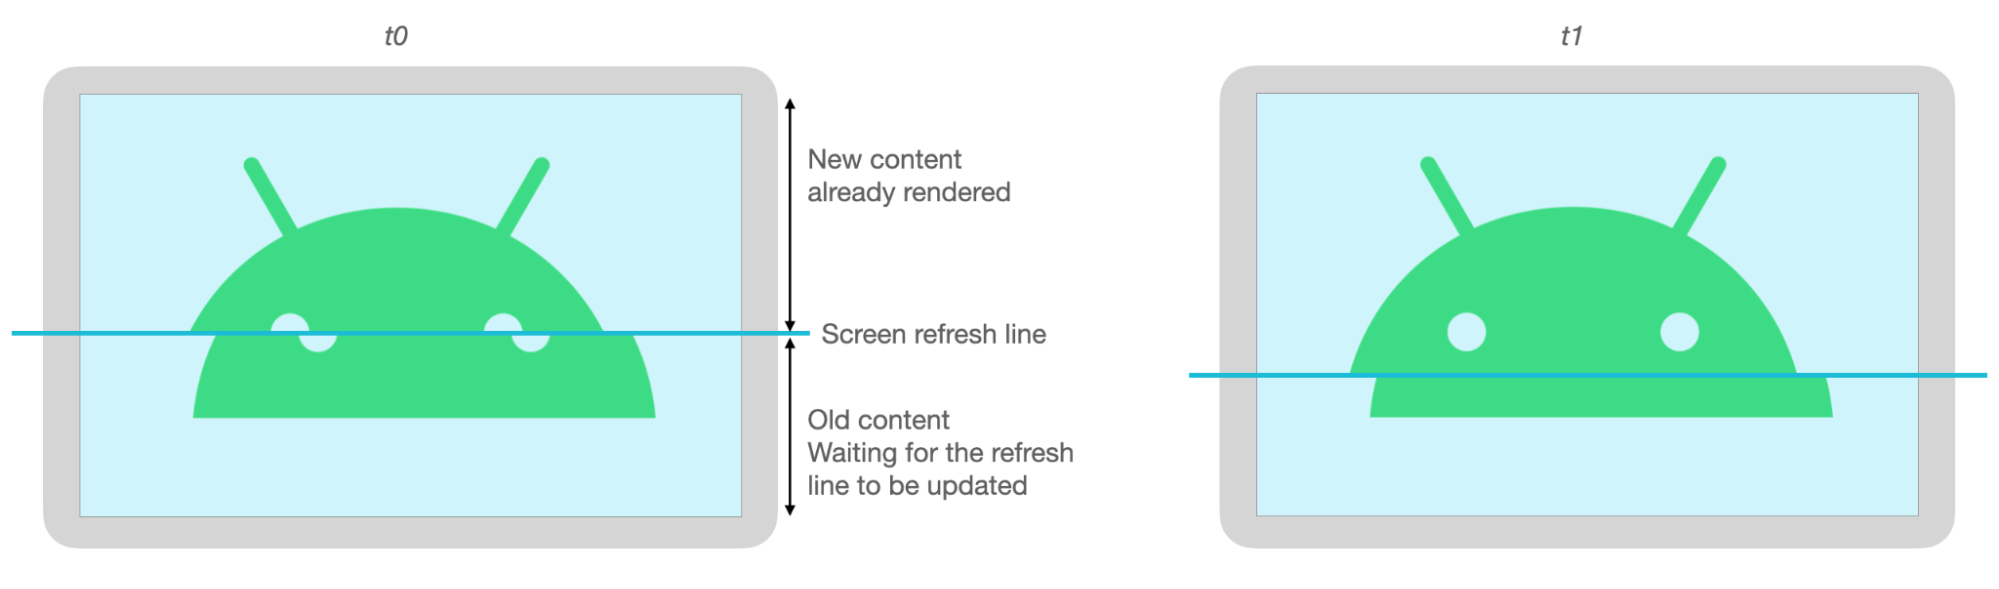 Górne i dolne części obrazu Androida są niewłaściwie wyrównane z powodu rozdarcia przy odświeżaniu ekranu.